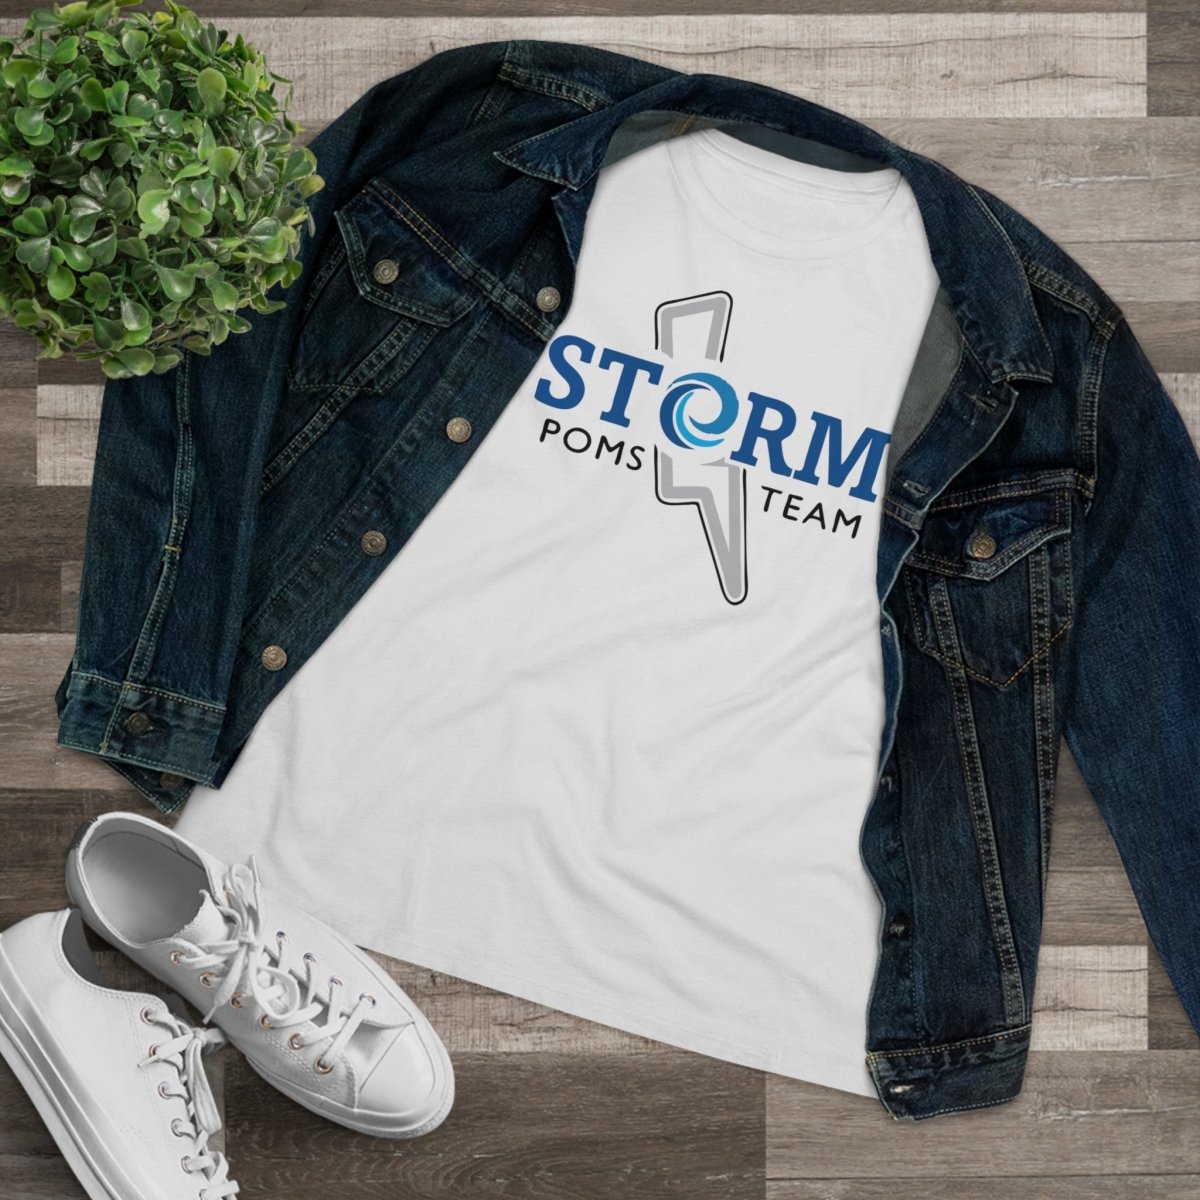 Strom Poms Team Women's Relaxed T-Shirt